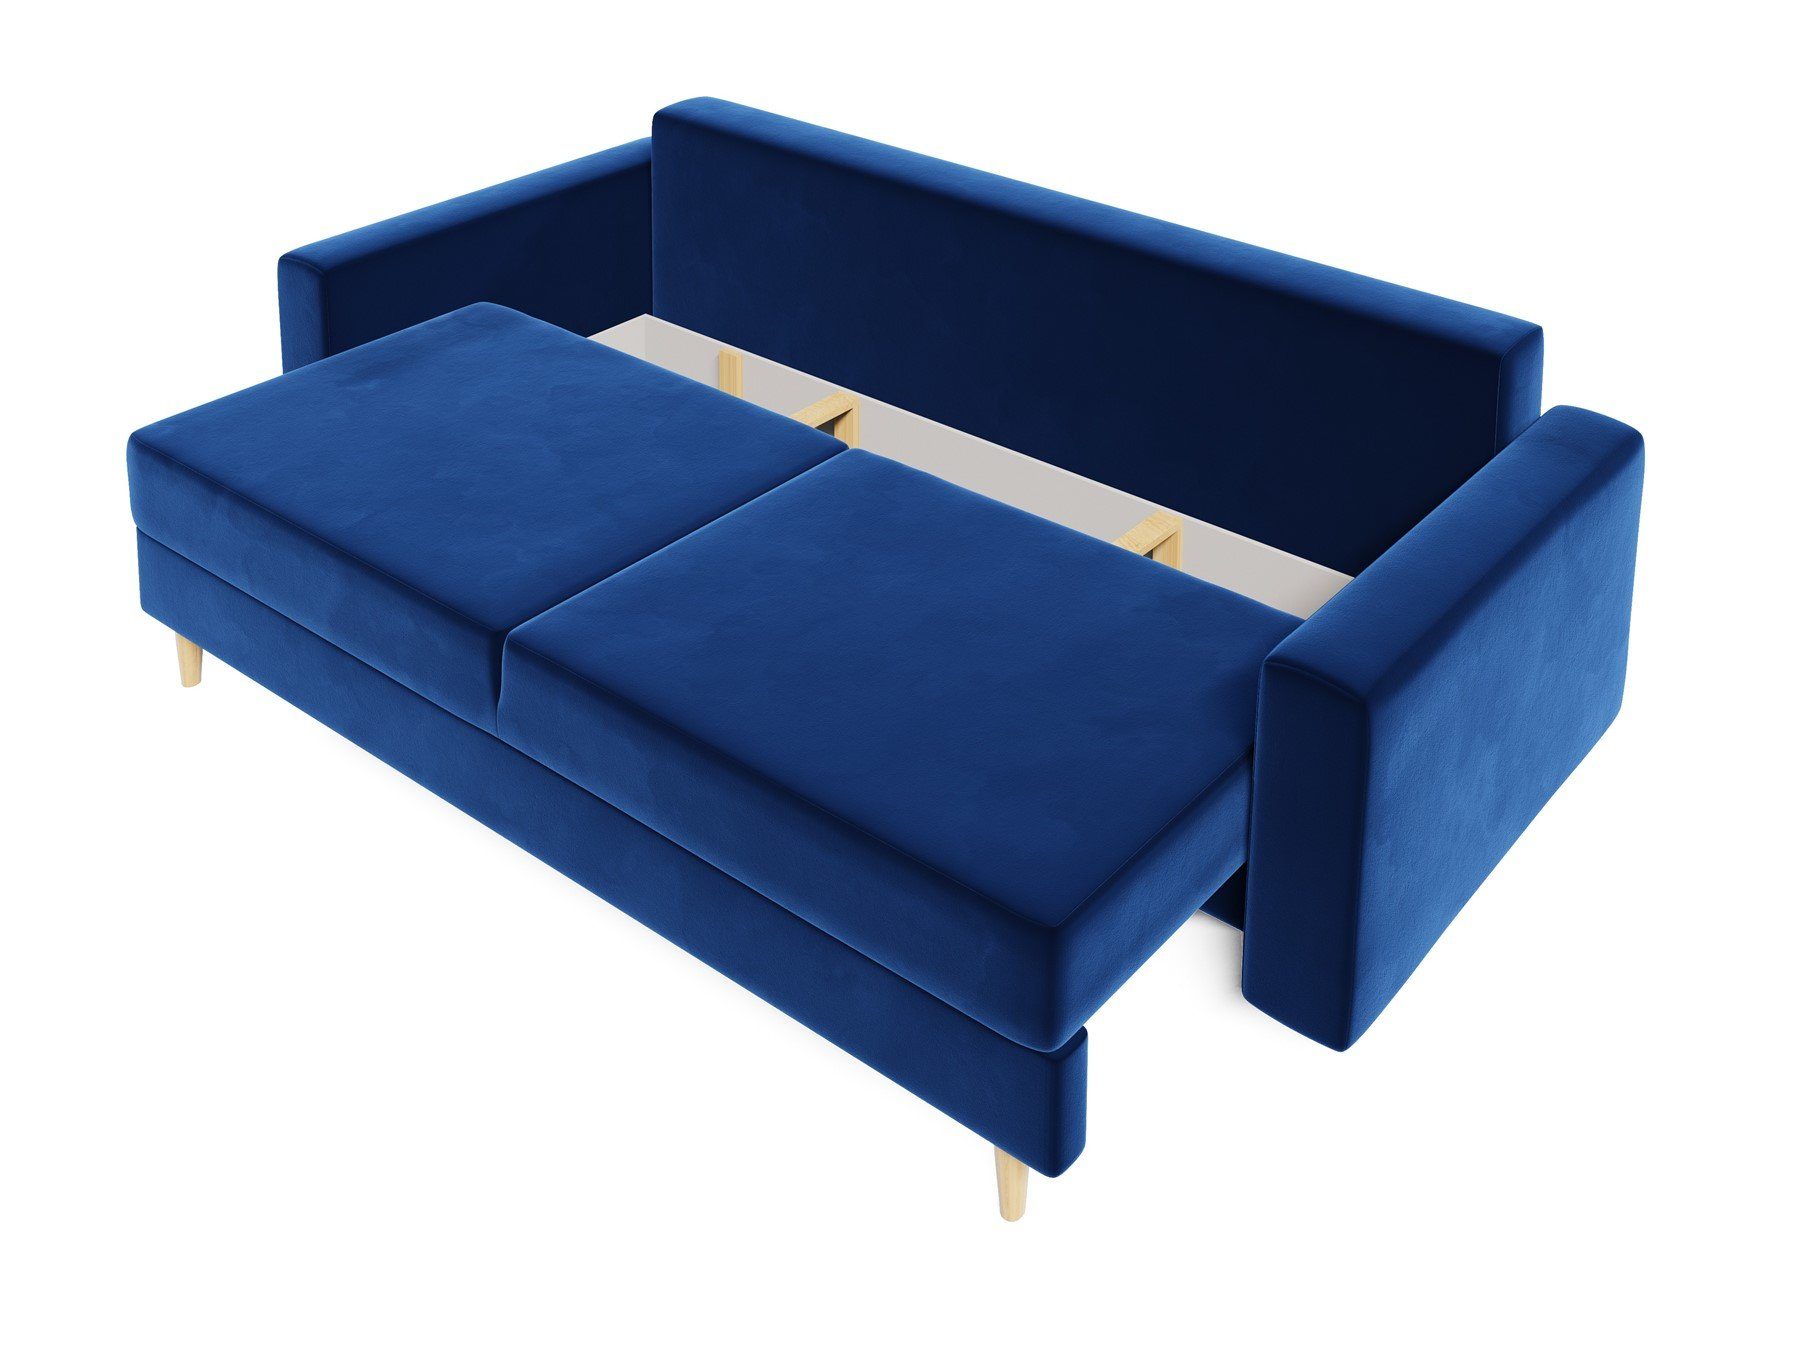 Sofa mit Designersofa BELLA 60er Blau Schlaffunktion, Rundumbezug, 3-Sitzer Schlafsofa Möbel Style Fun